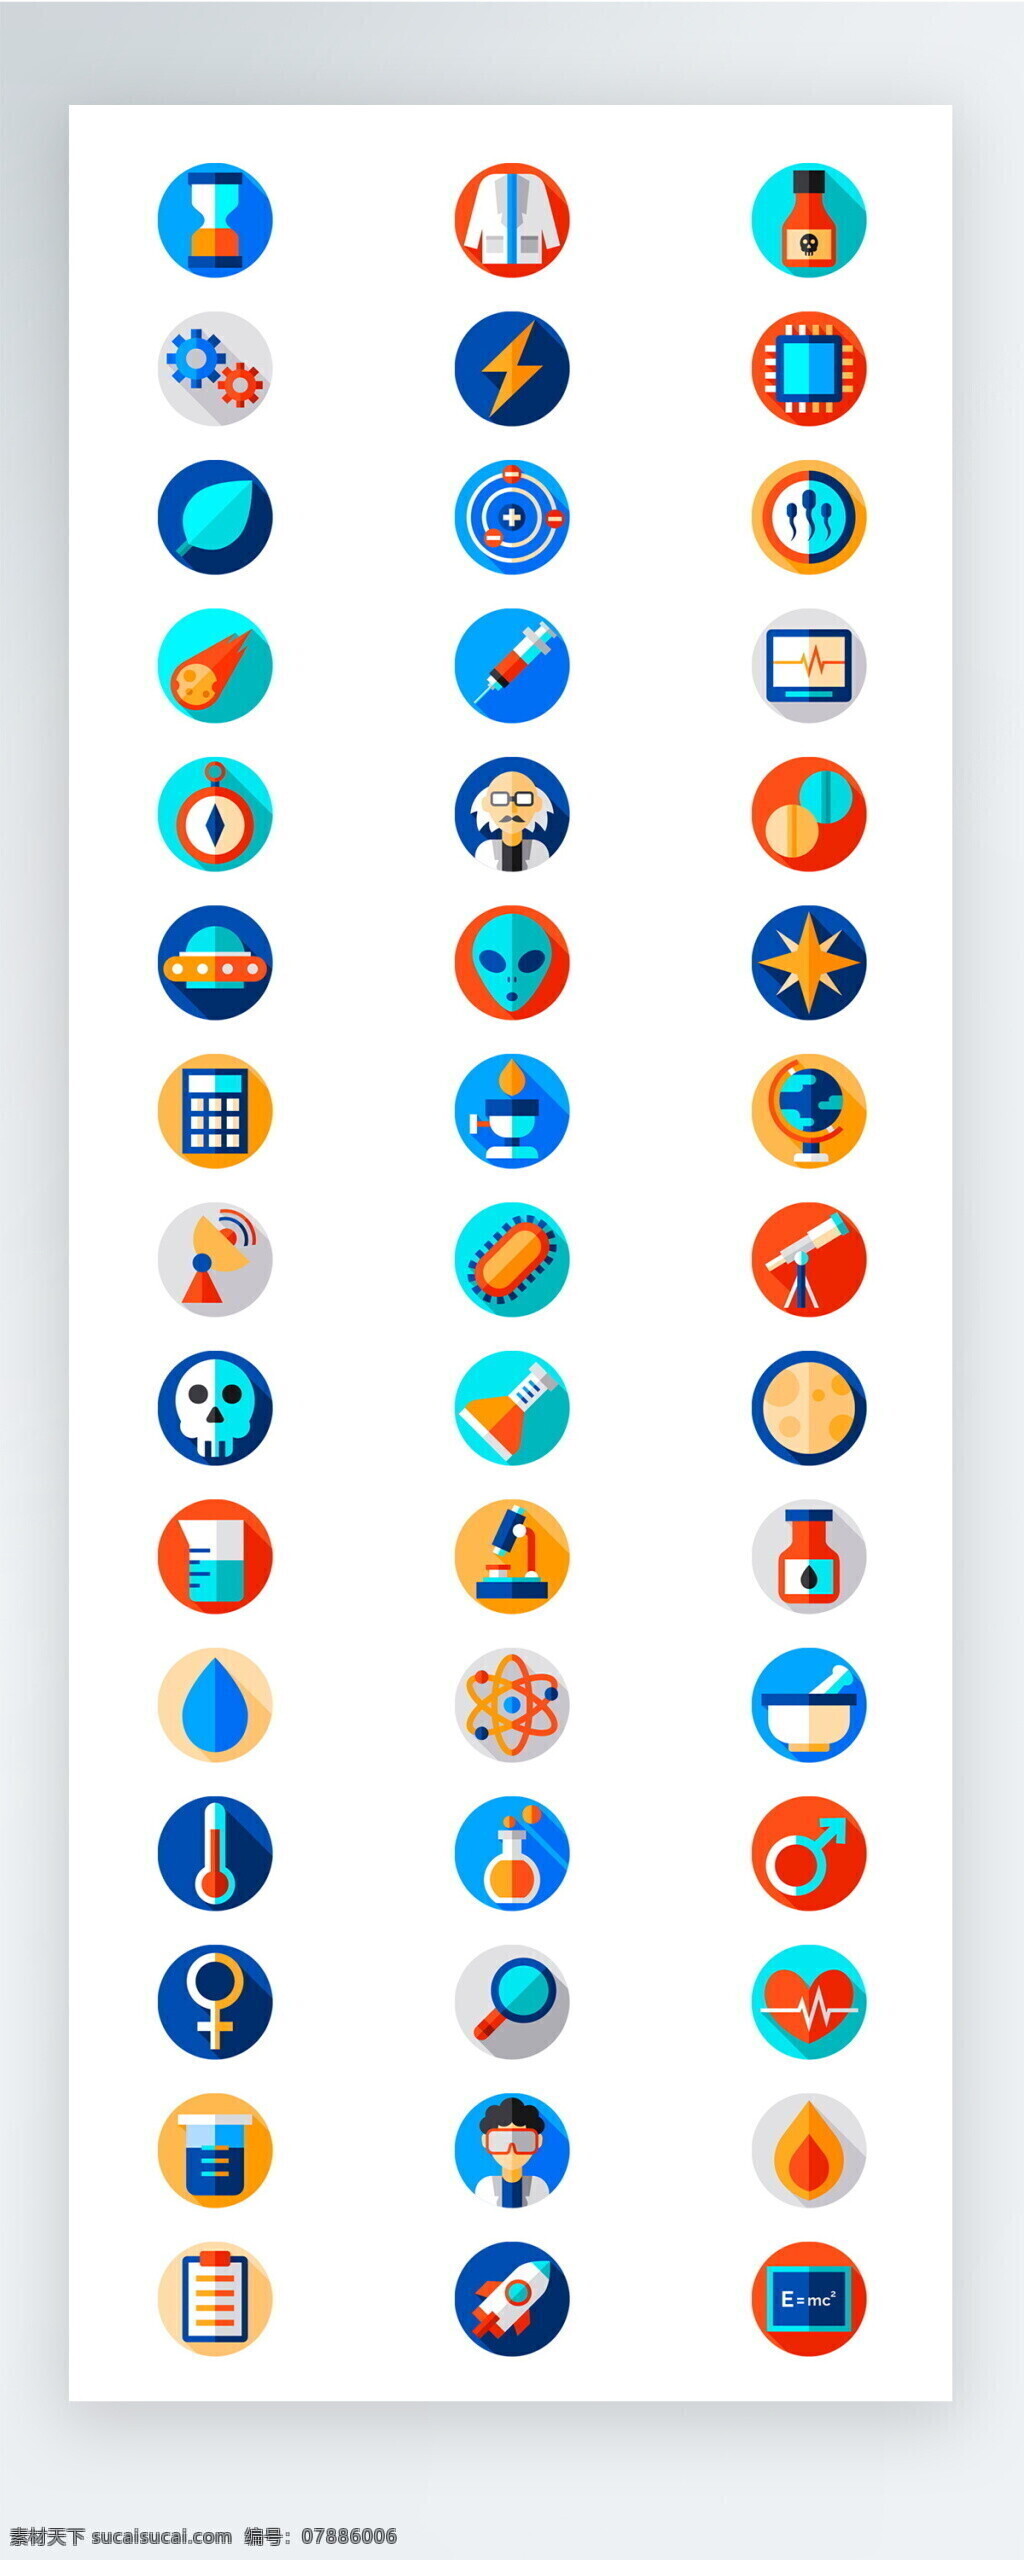 生物 医疗 实验 彩色 拟 物 图标 矢量 icon icon图标 ui 手机 拟物 护理 学习 工作